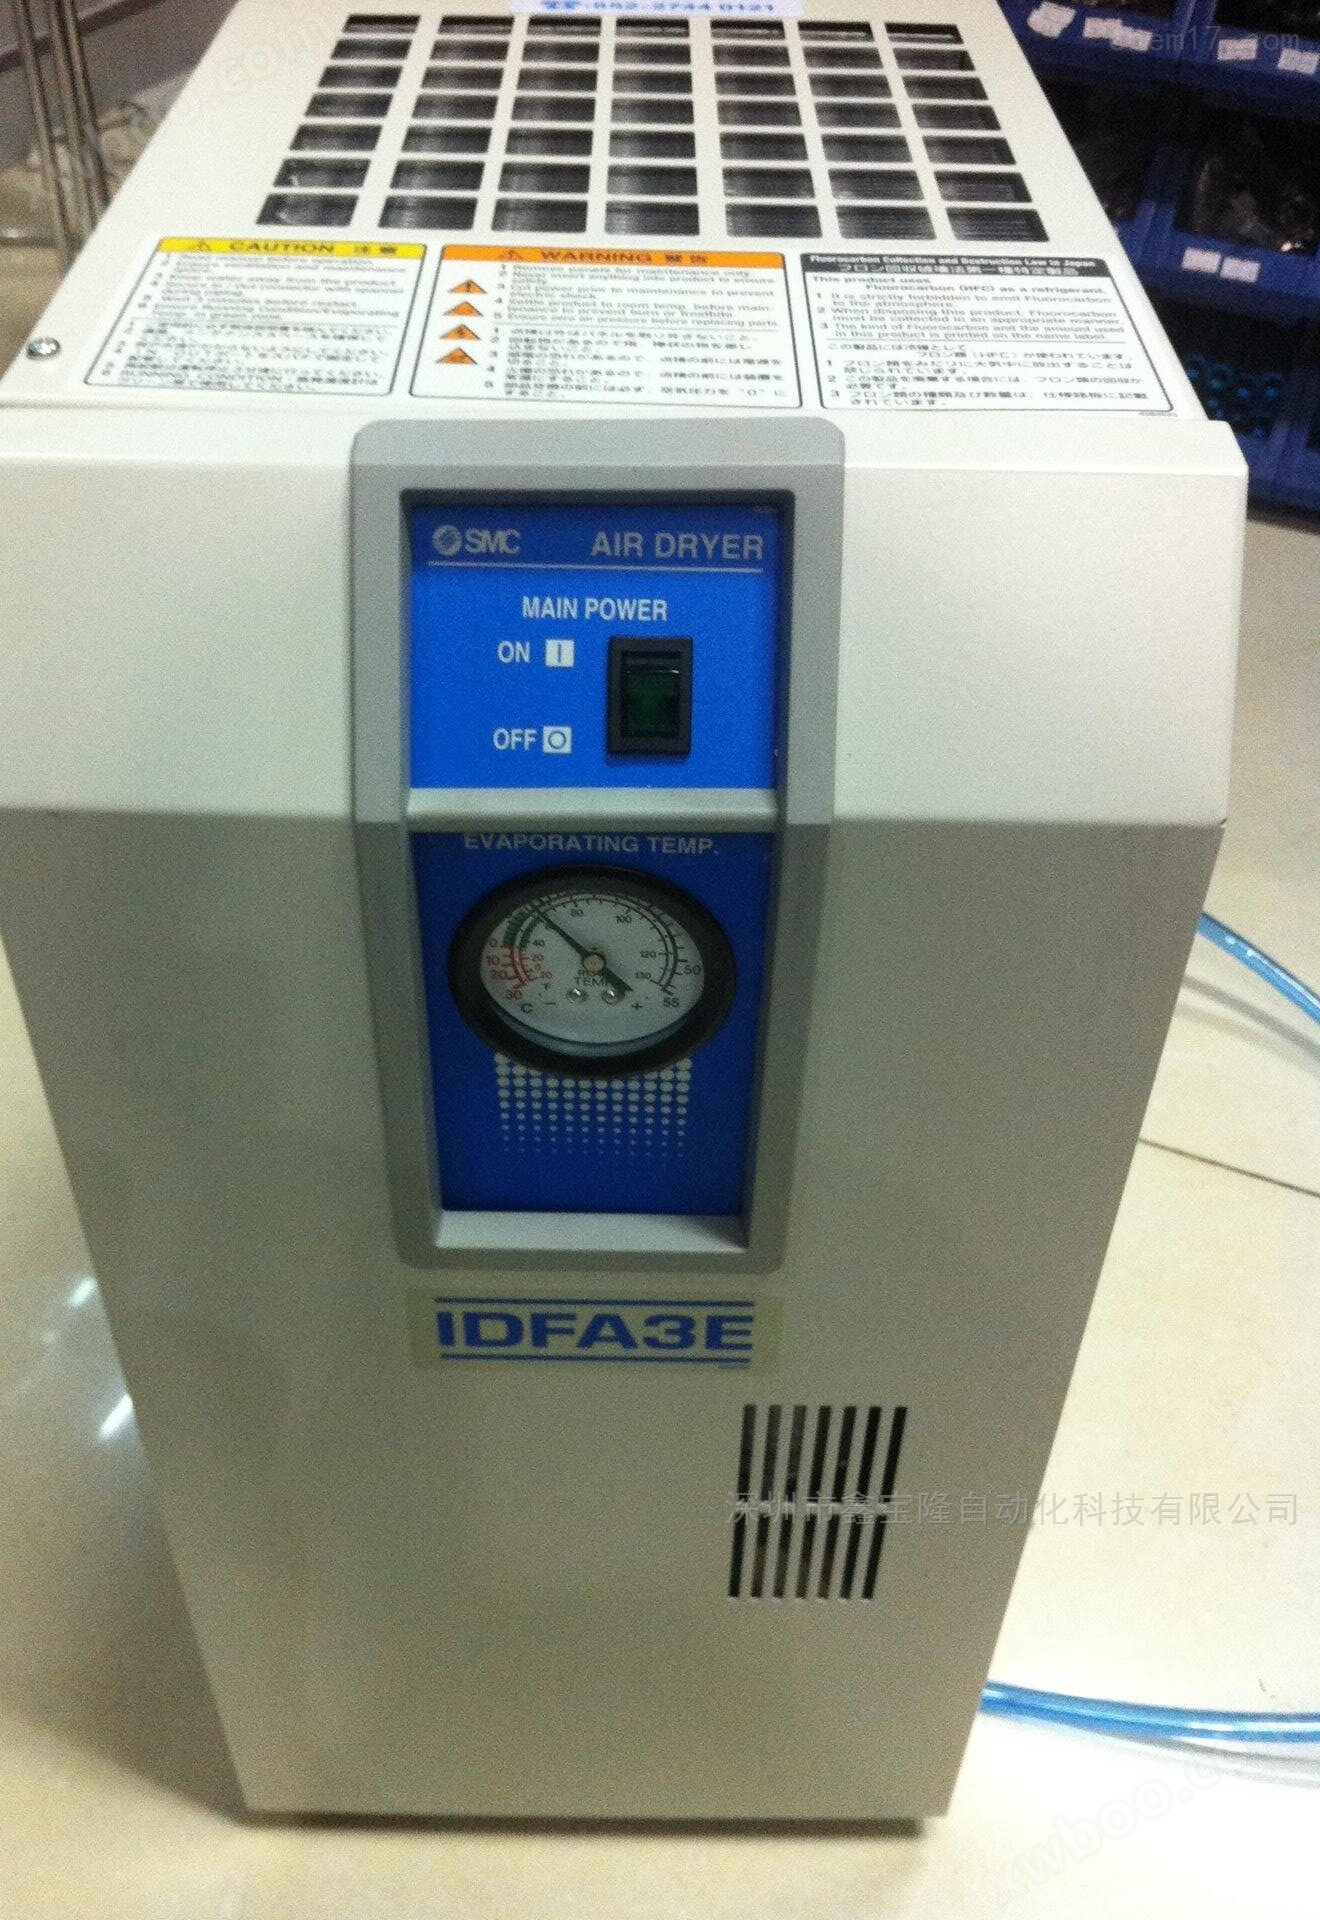 冷干机IDFA6E-23日本SMC冷冻式干燥机